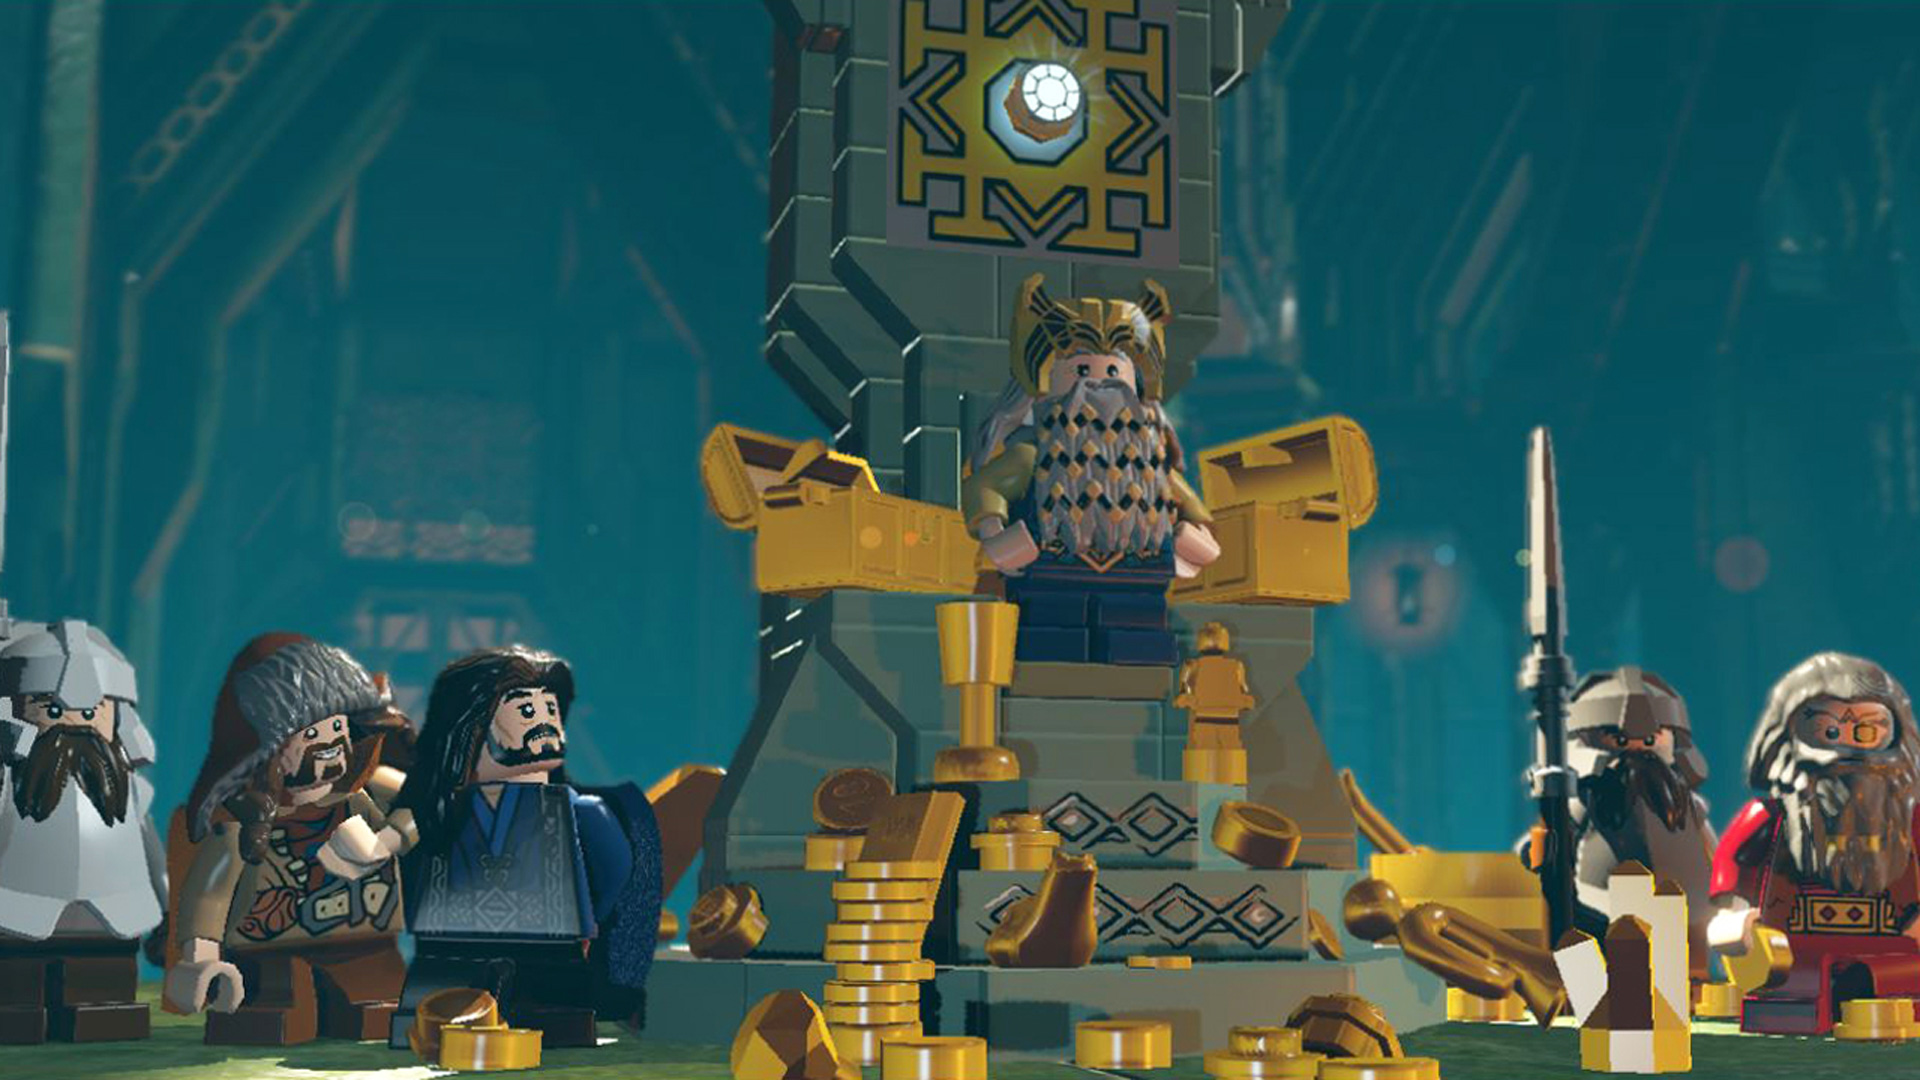 Jogo Lego The Hobbit para PS4